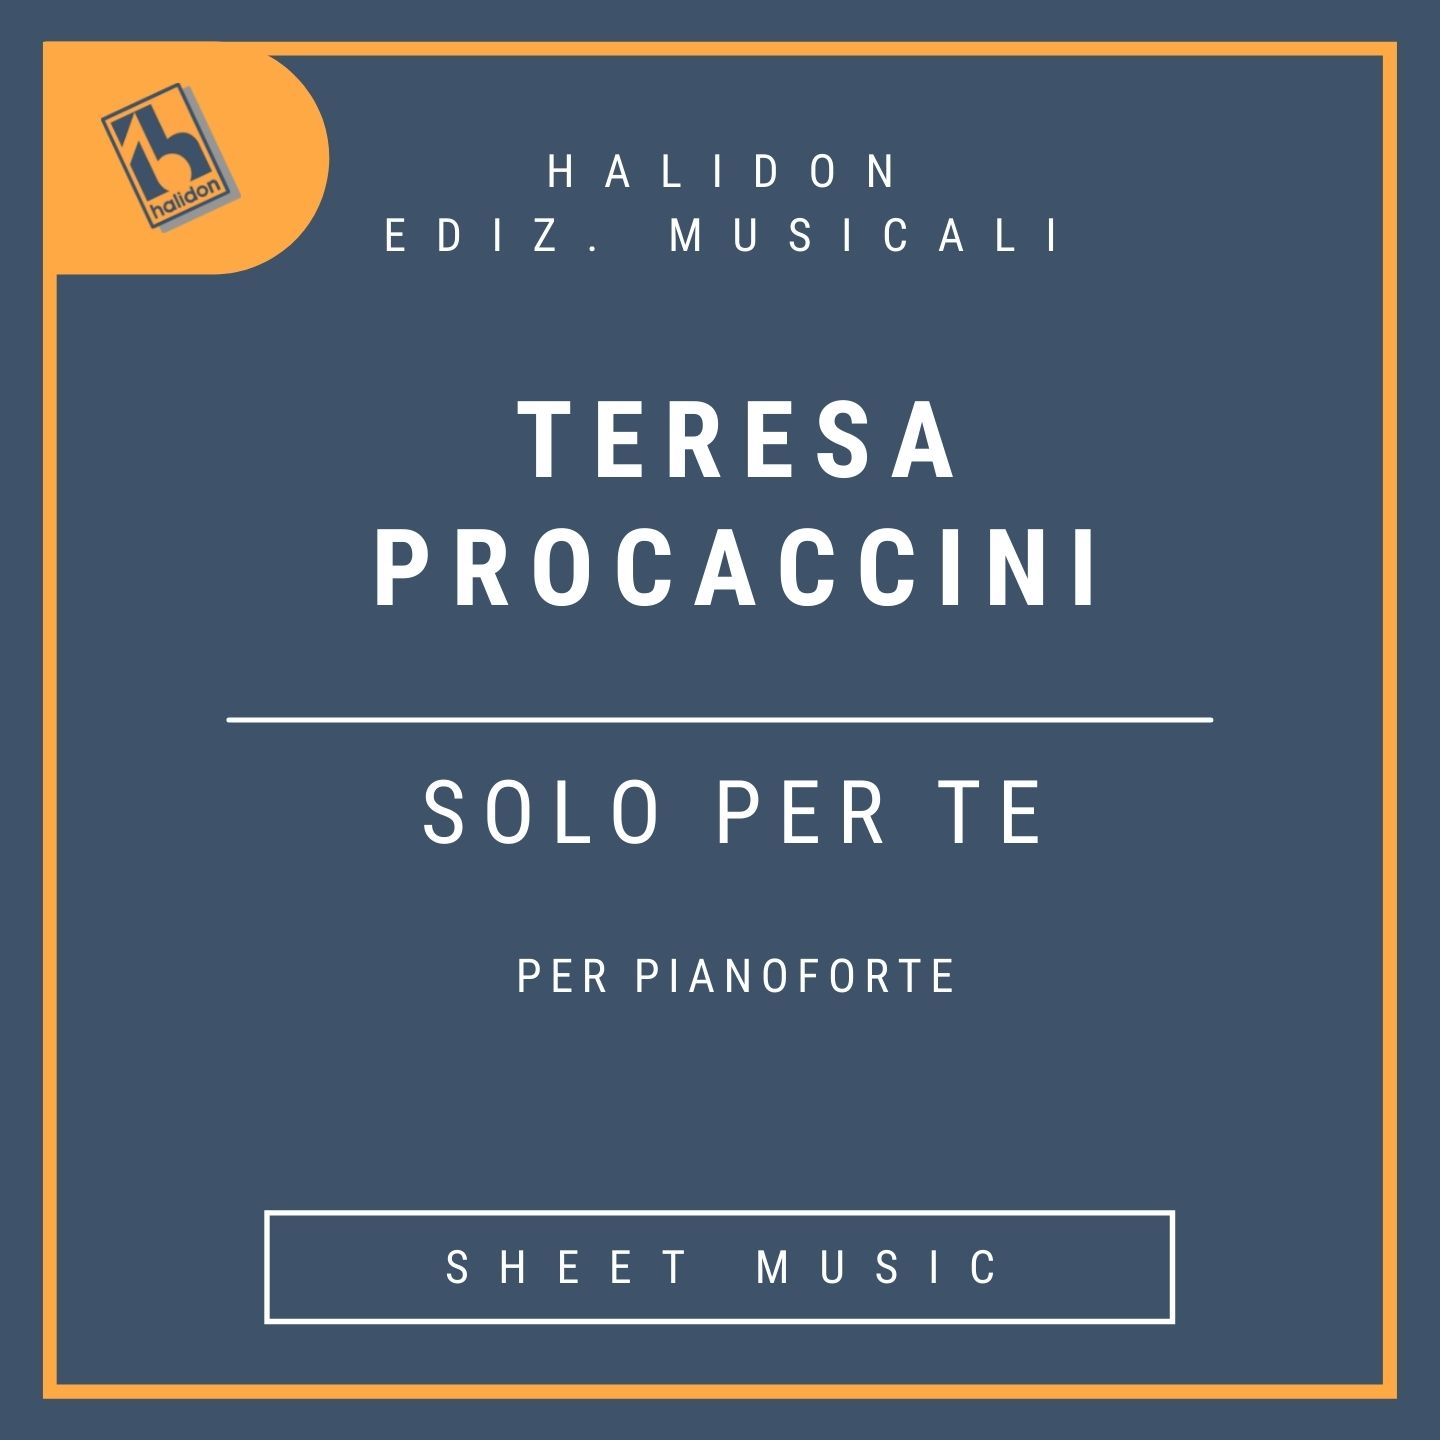 Teresa Procaccini - Solo per te